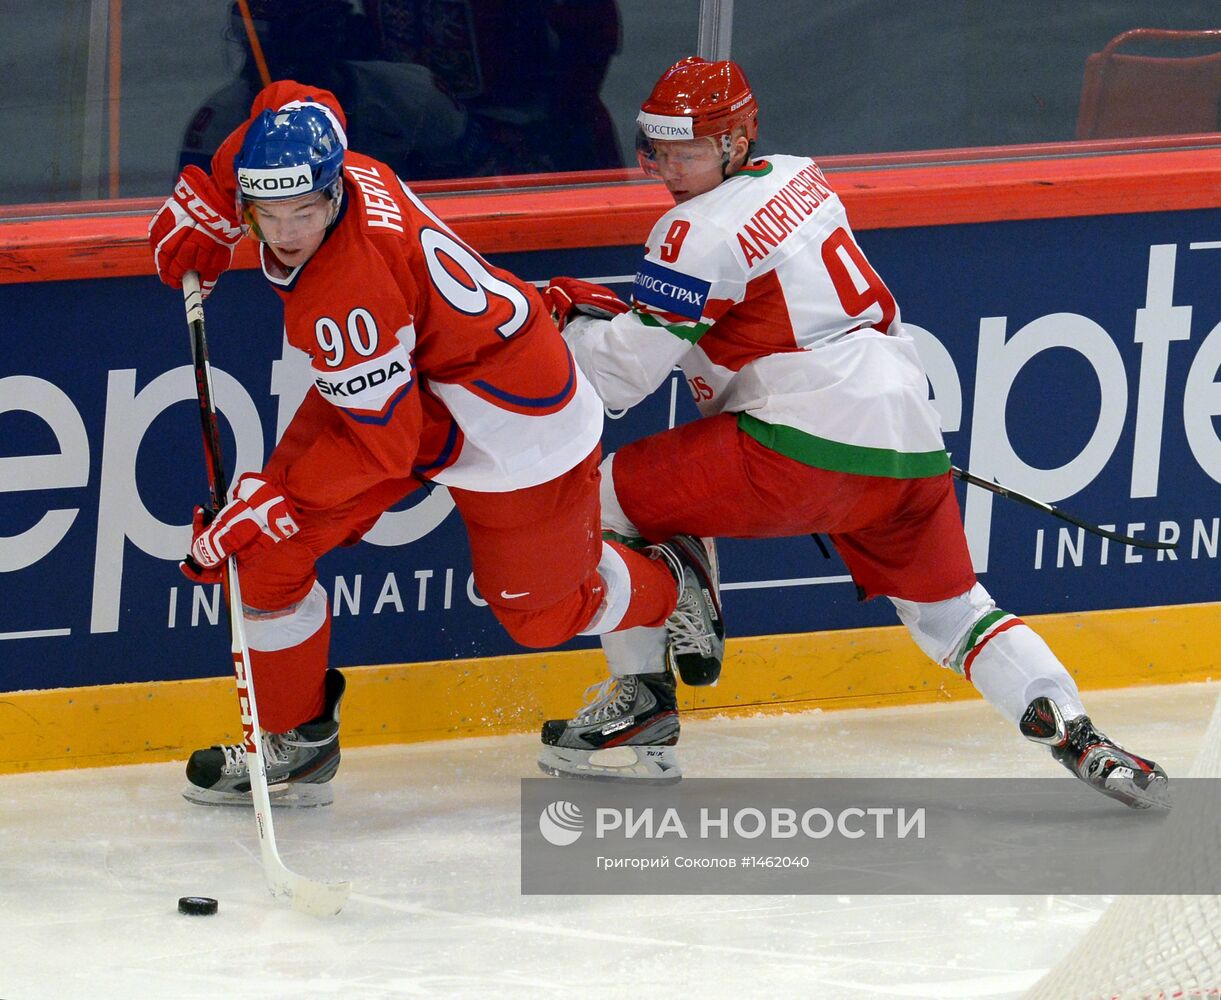 Хоккей. Чемпионат мира. Матч Чехия - Белоруссия